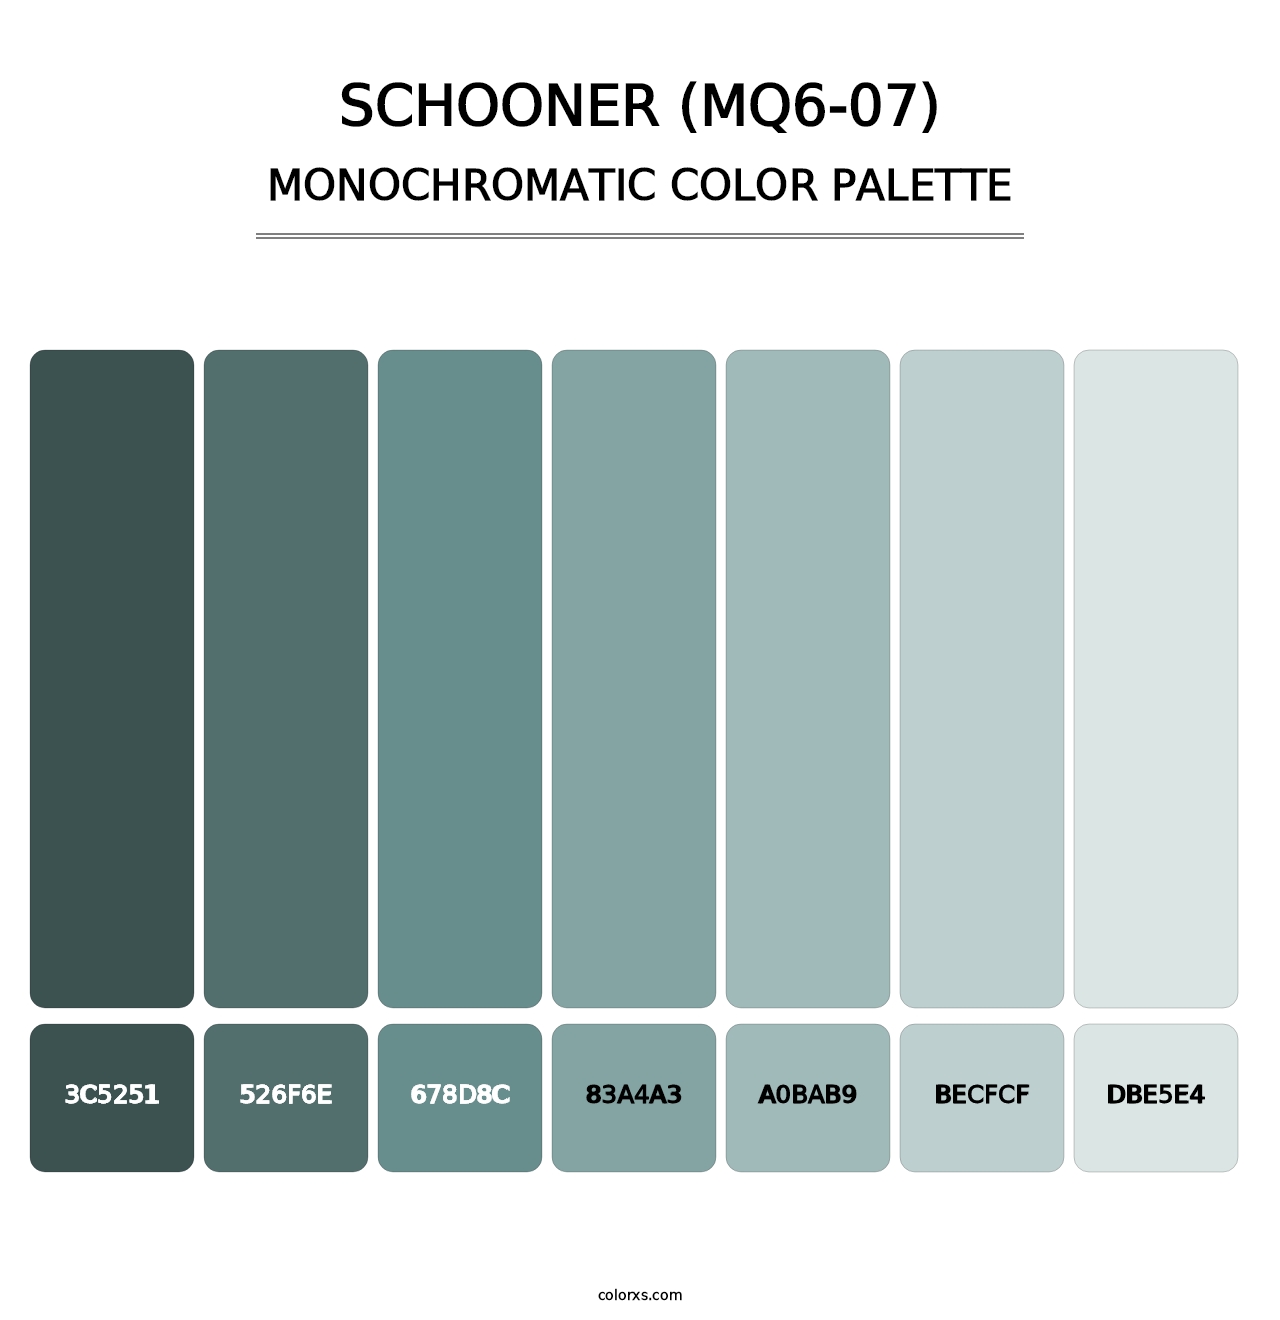 Schooner (MQ6-07) - Monochromatic Color Palette